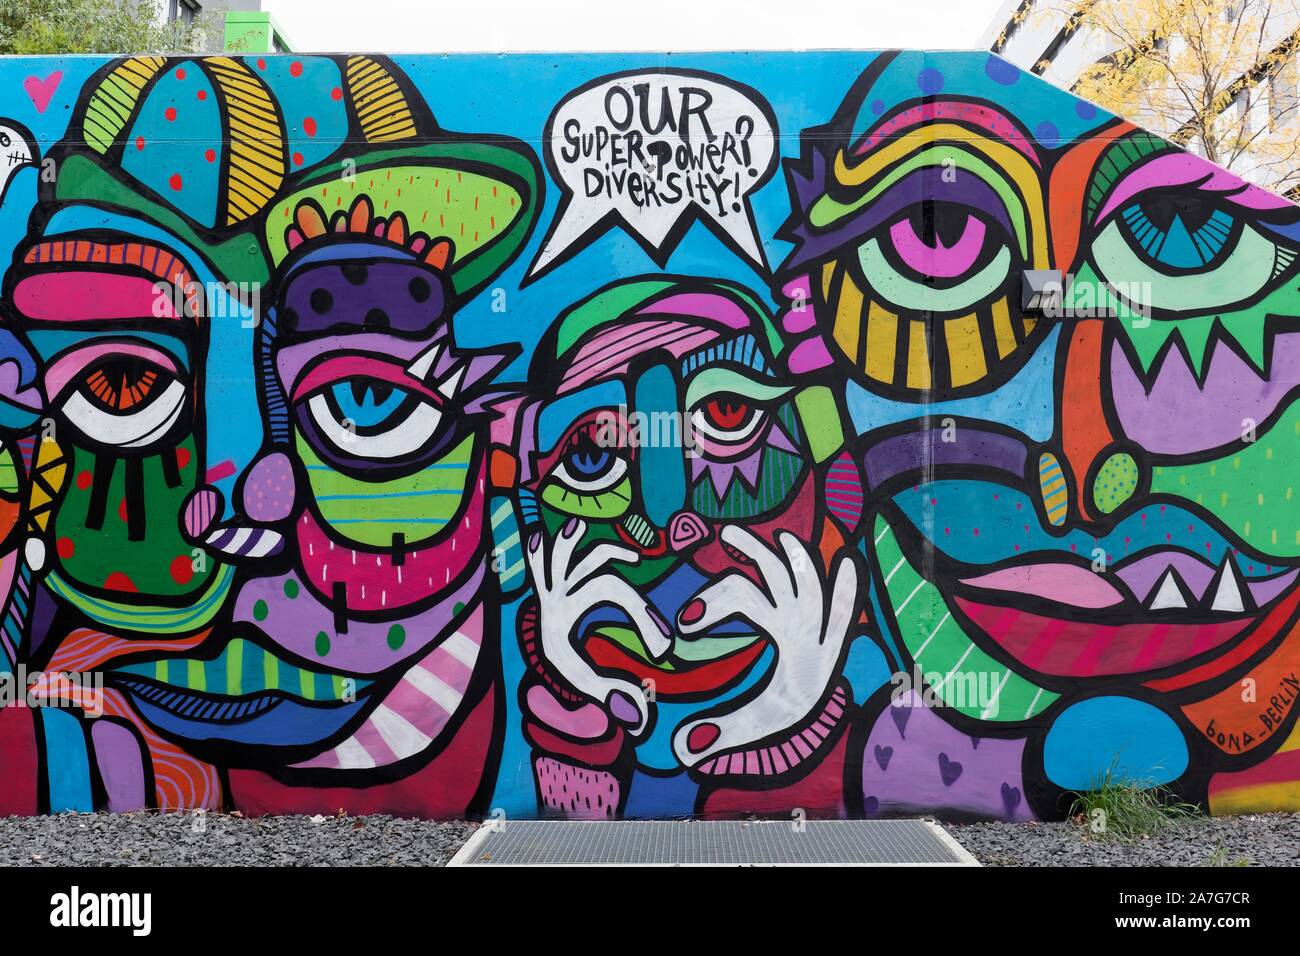 Rostros coloridos, abstracto, simbolizan la diversidad, en lugar de la discriminación política, mural de Bona Berlín, Streetart, 40 Grad arte urbano Foto de stock